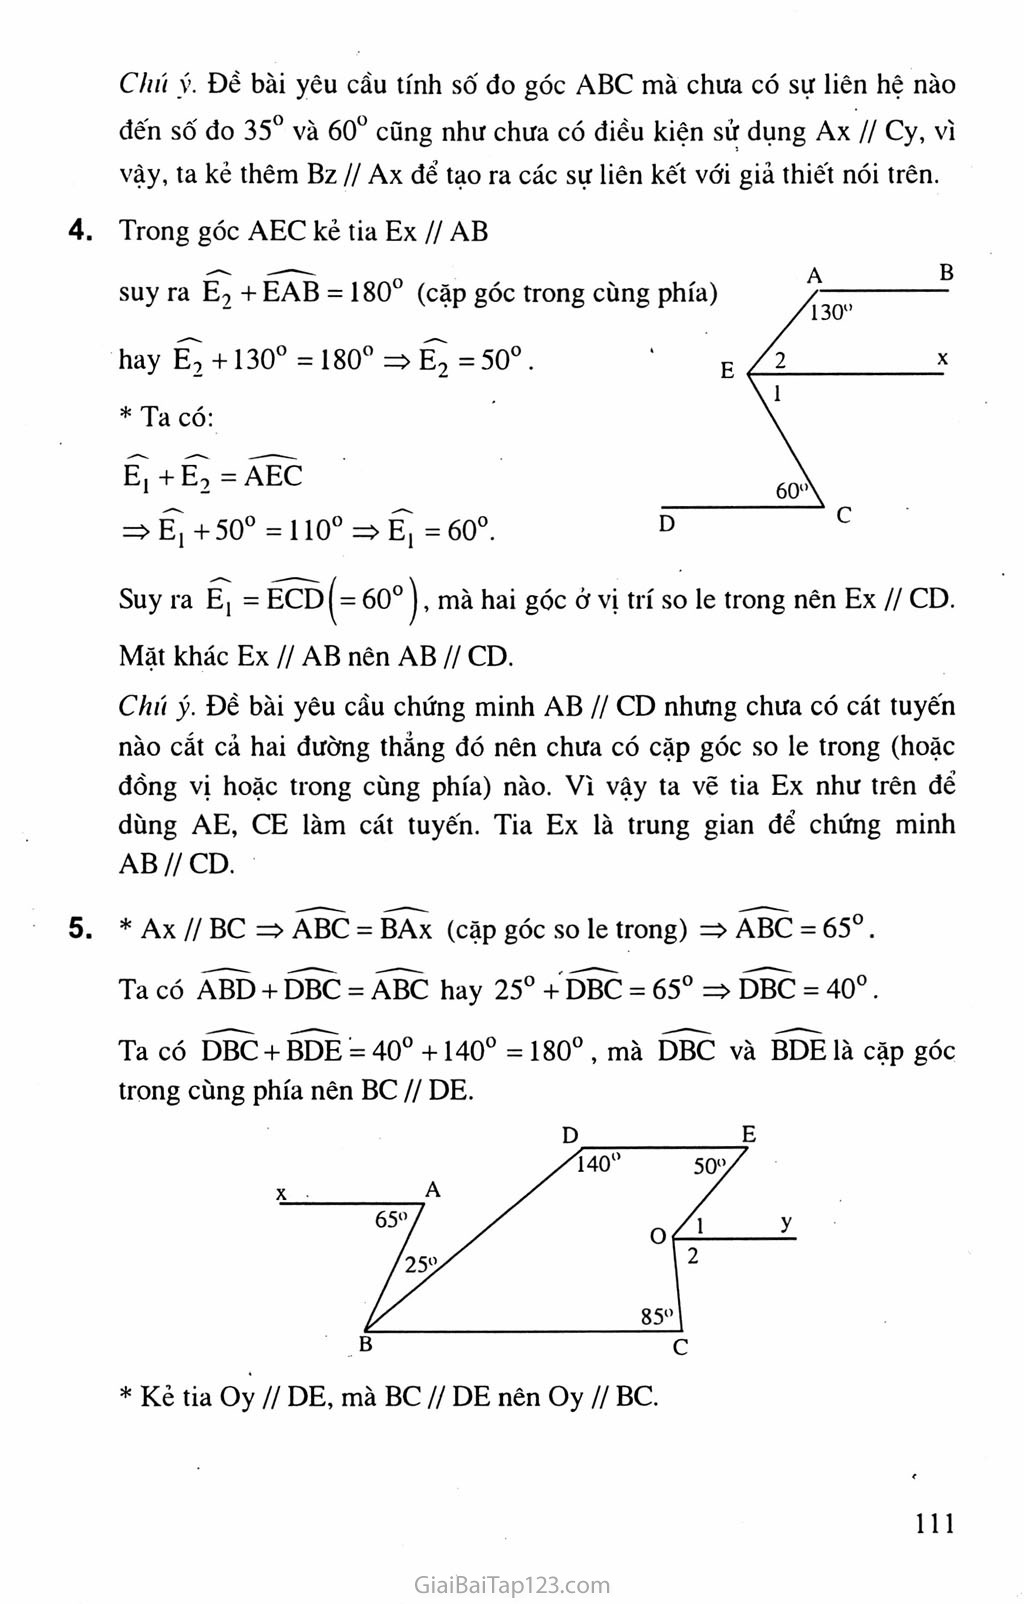 Bài 6. Từ vuông góc đến song song trang 6